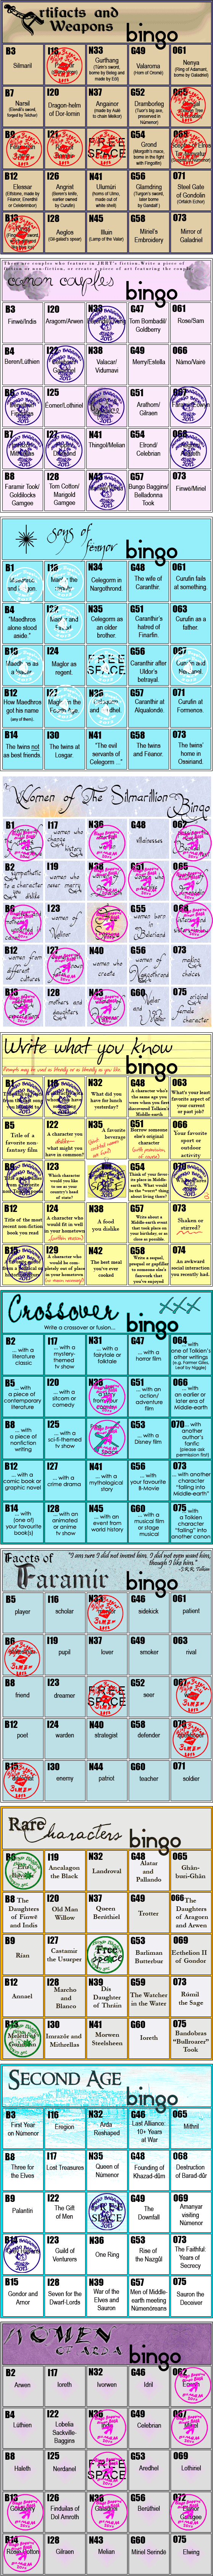 Aria's Bingo Cards